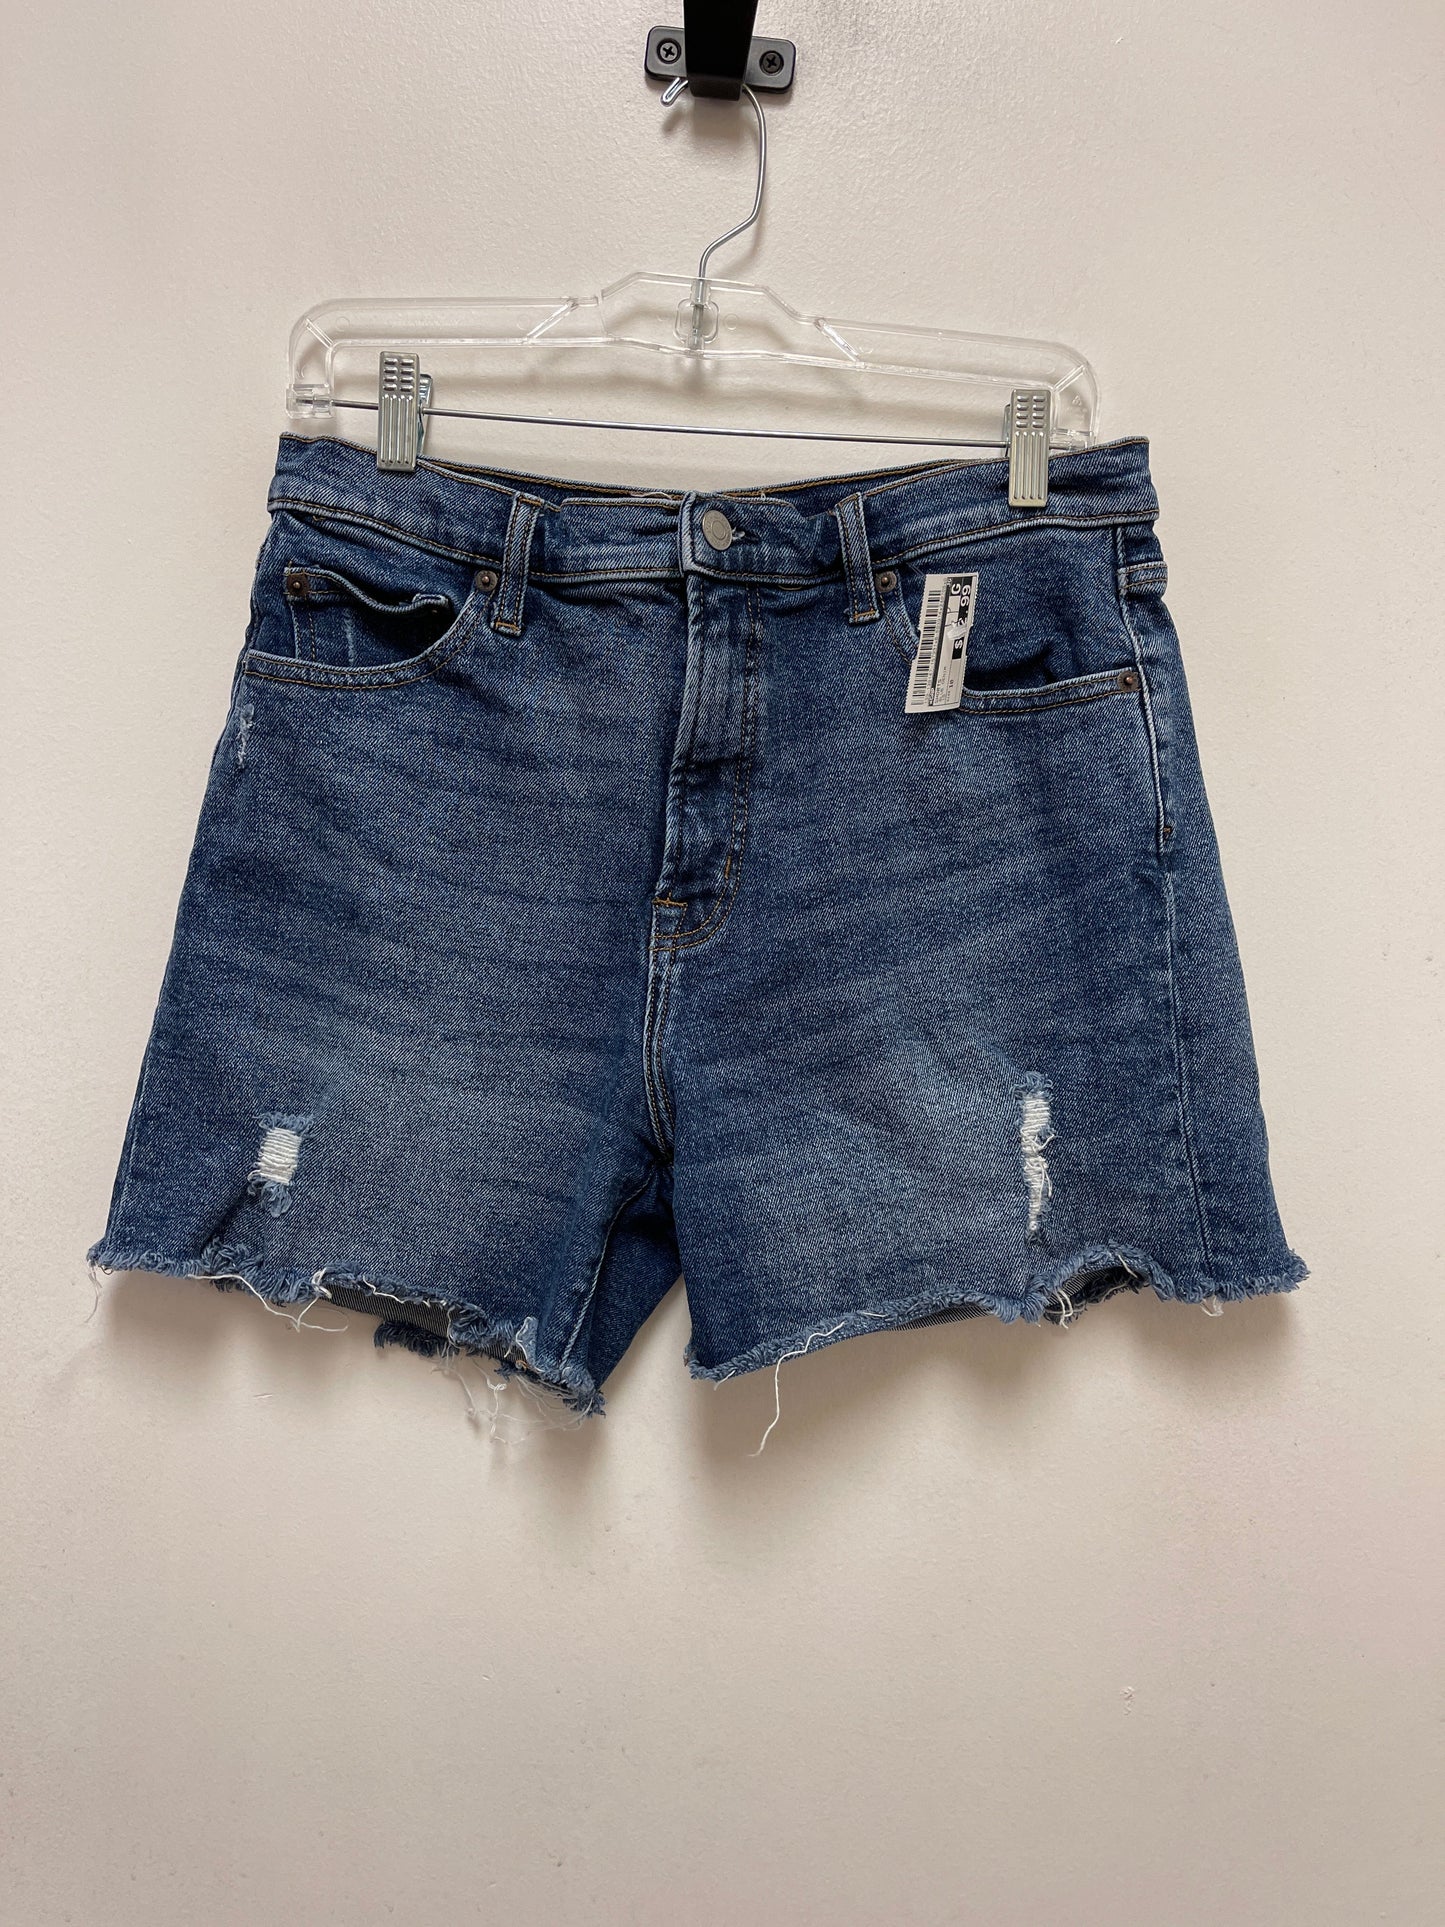 Blue Denim Shorts Gap, Size 10